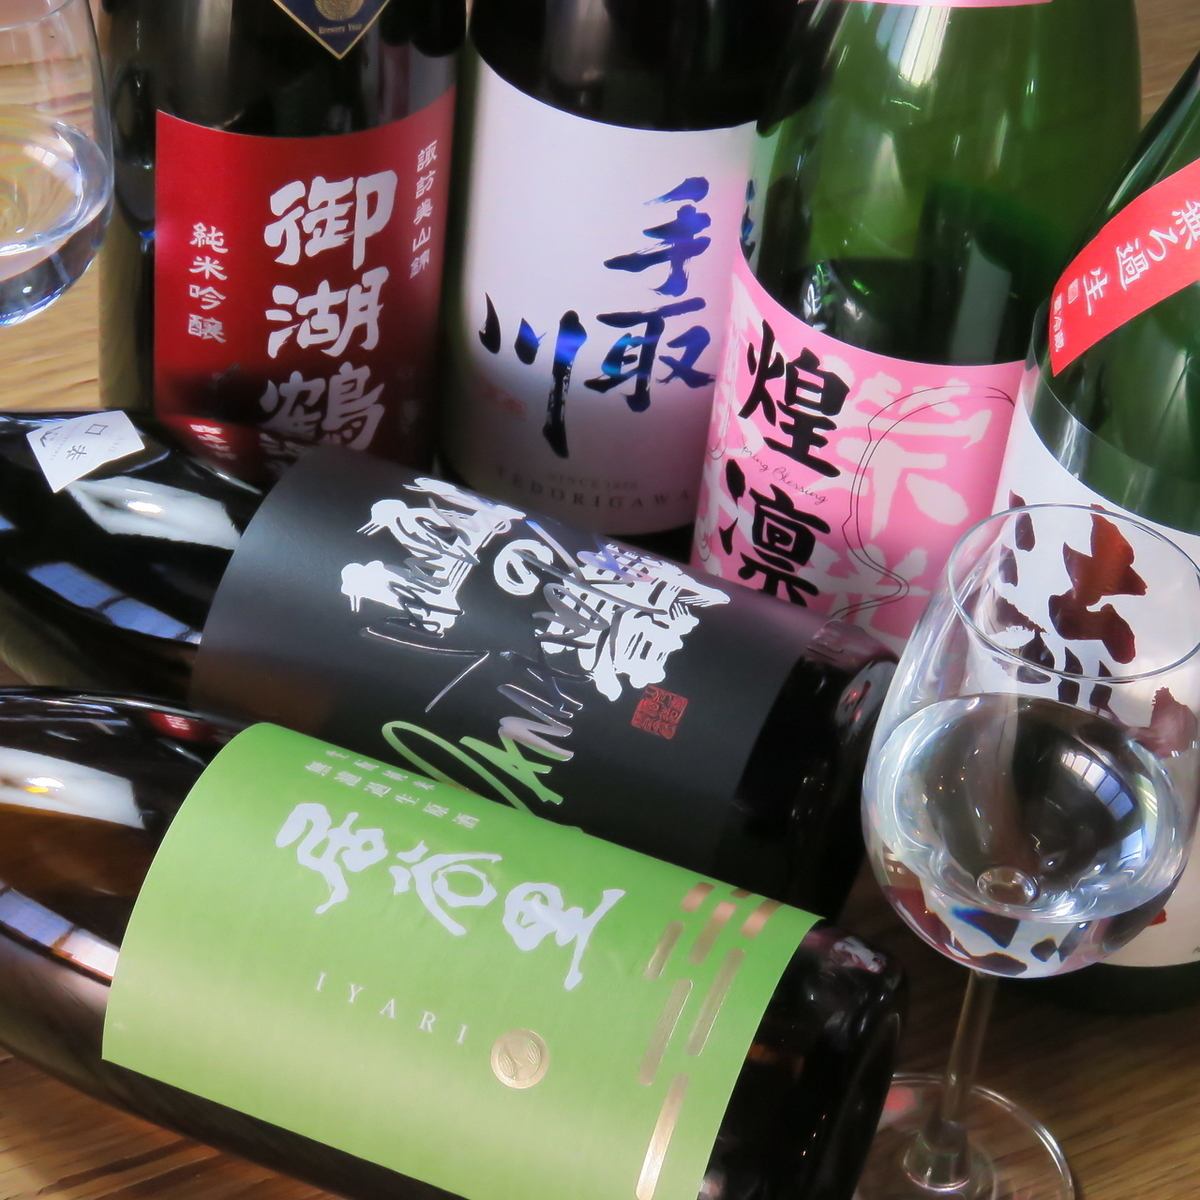 Enjoy 3 types of sake carefully selected by the owner♪ Sake set 1200 yen